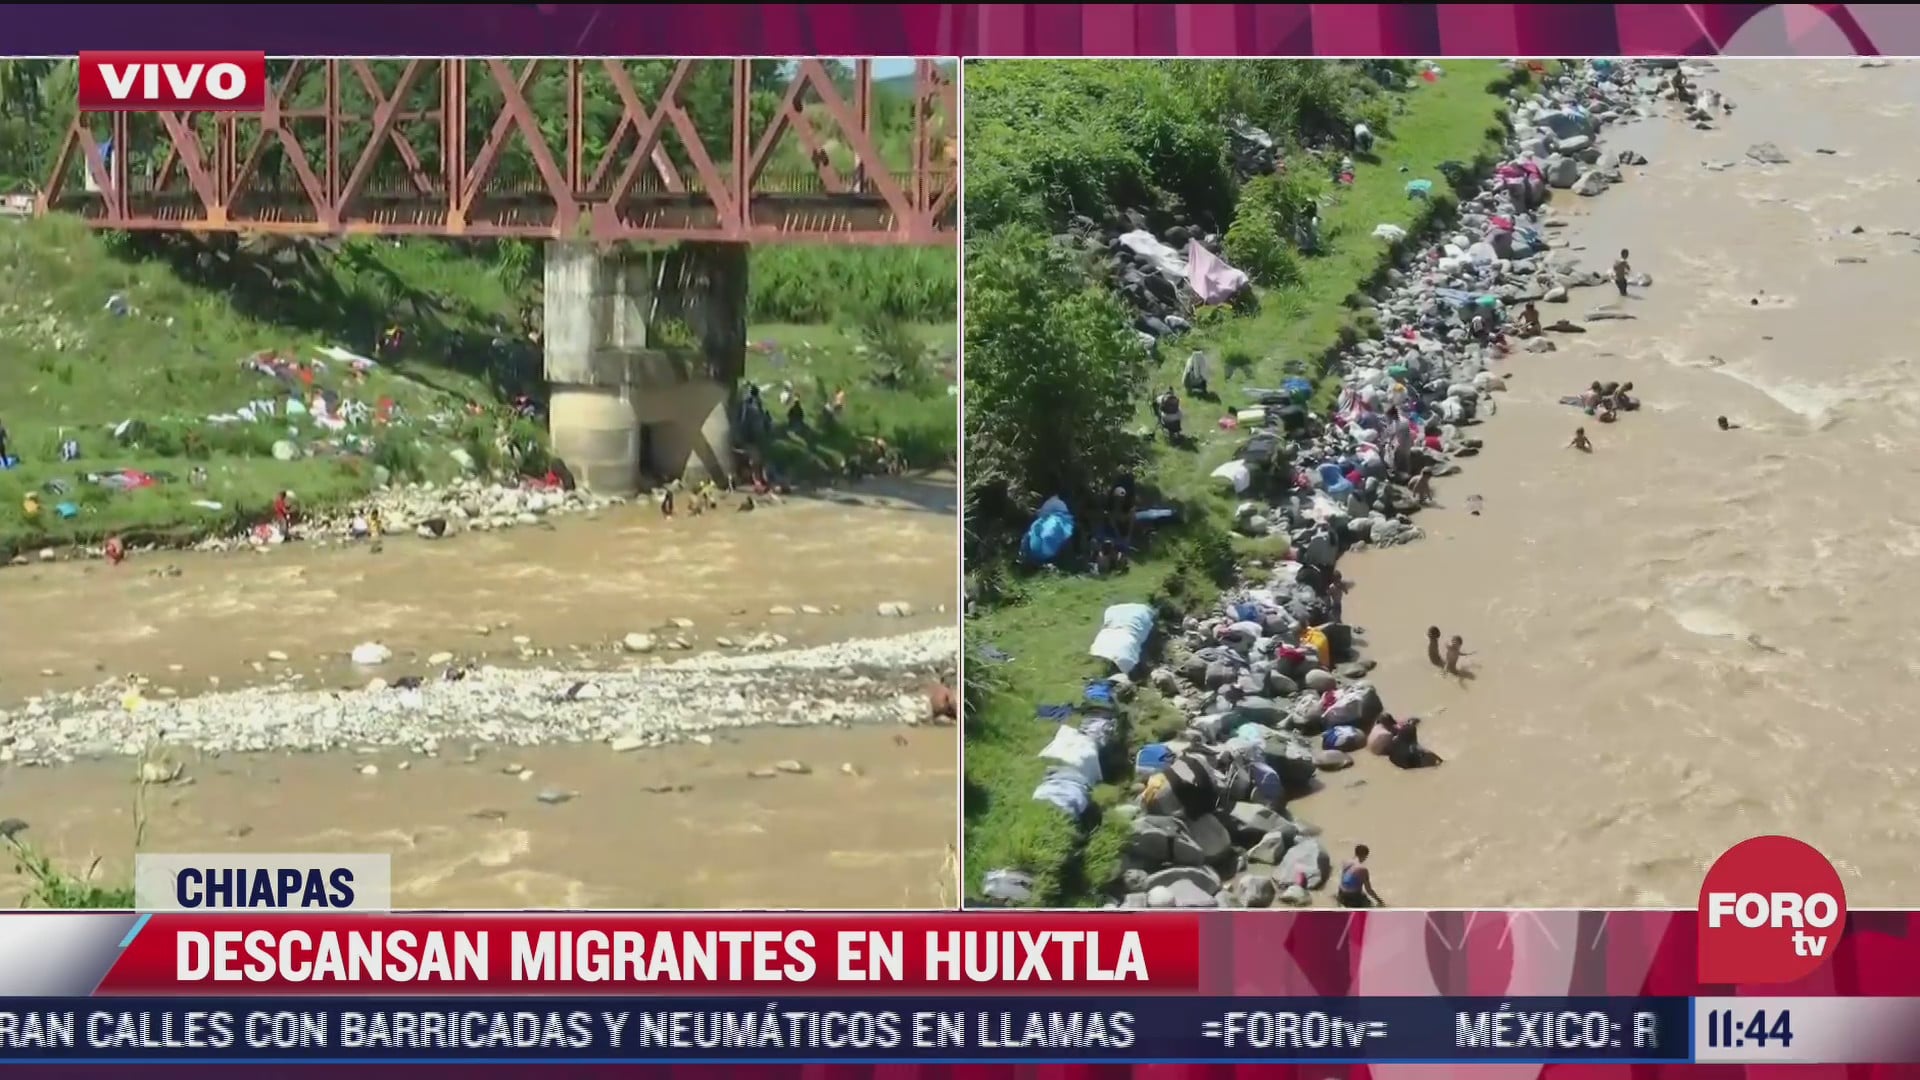 Caravana migrante descansa en Huixtla, Chiapas